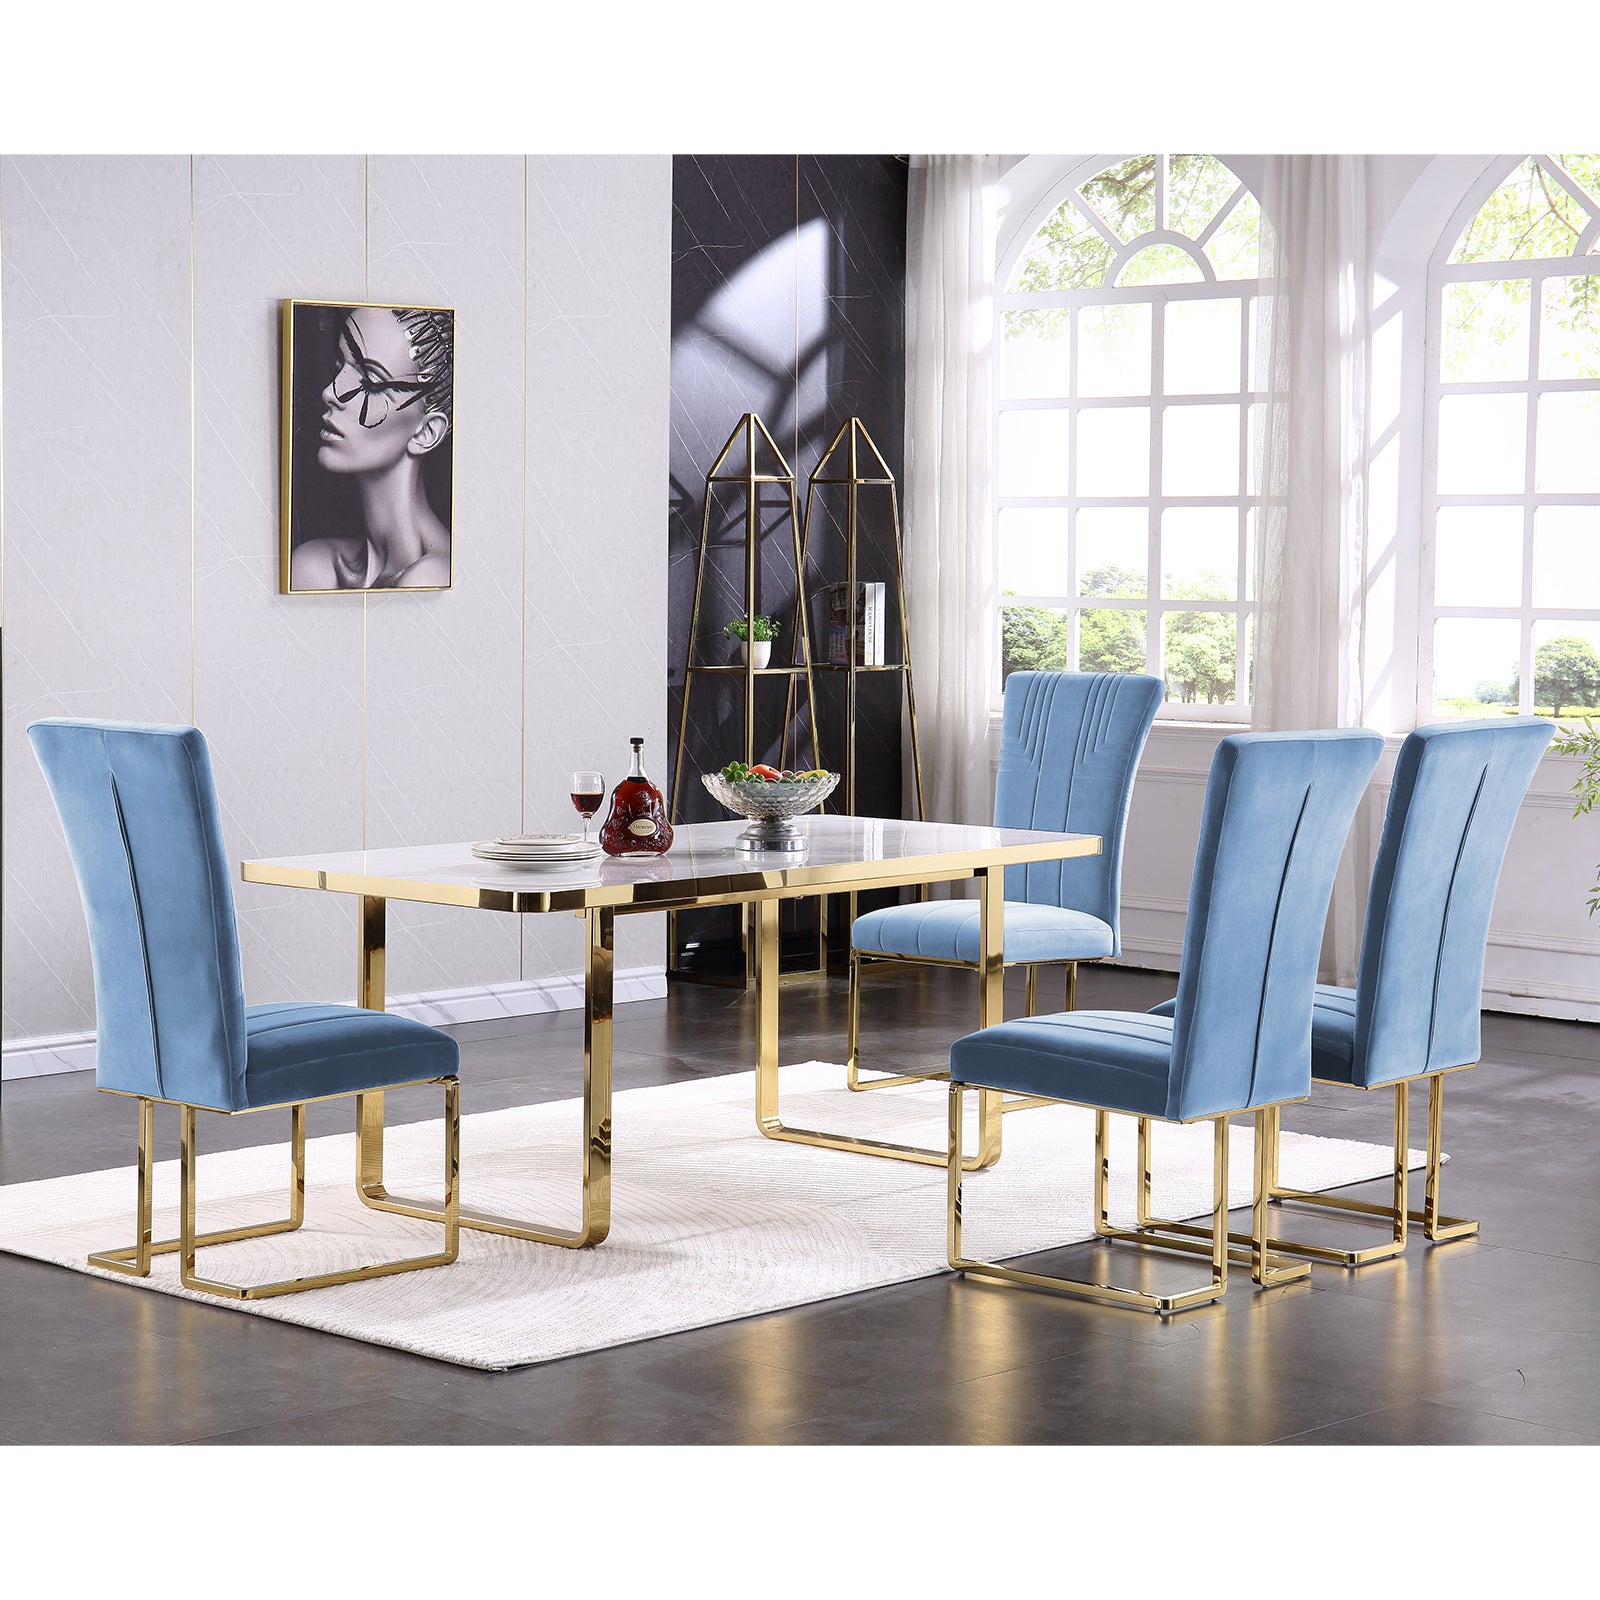 Sky Blue Velvet dining chairs | Metal Sled Base| C122